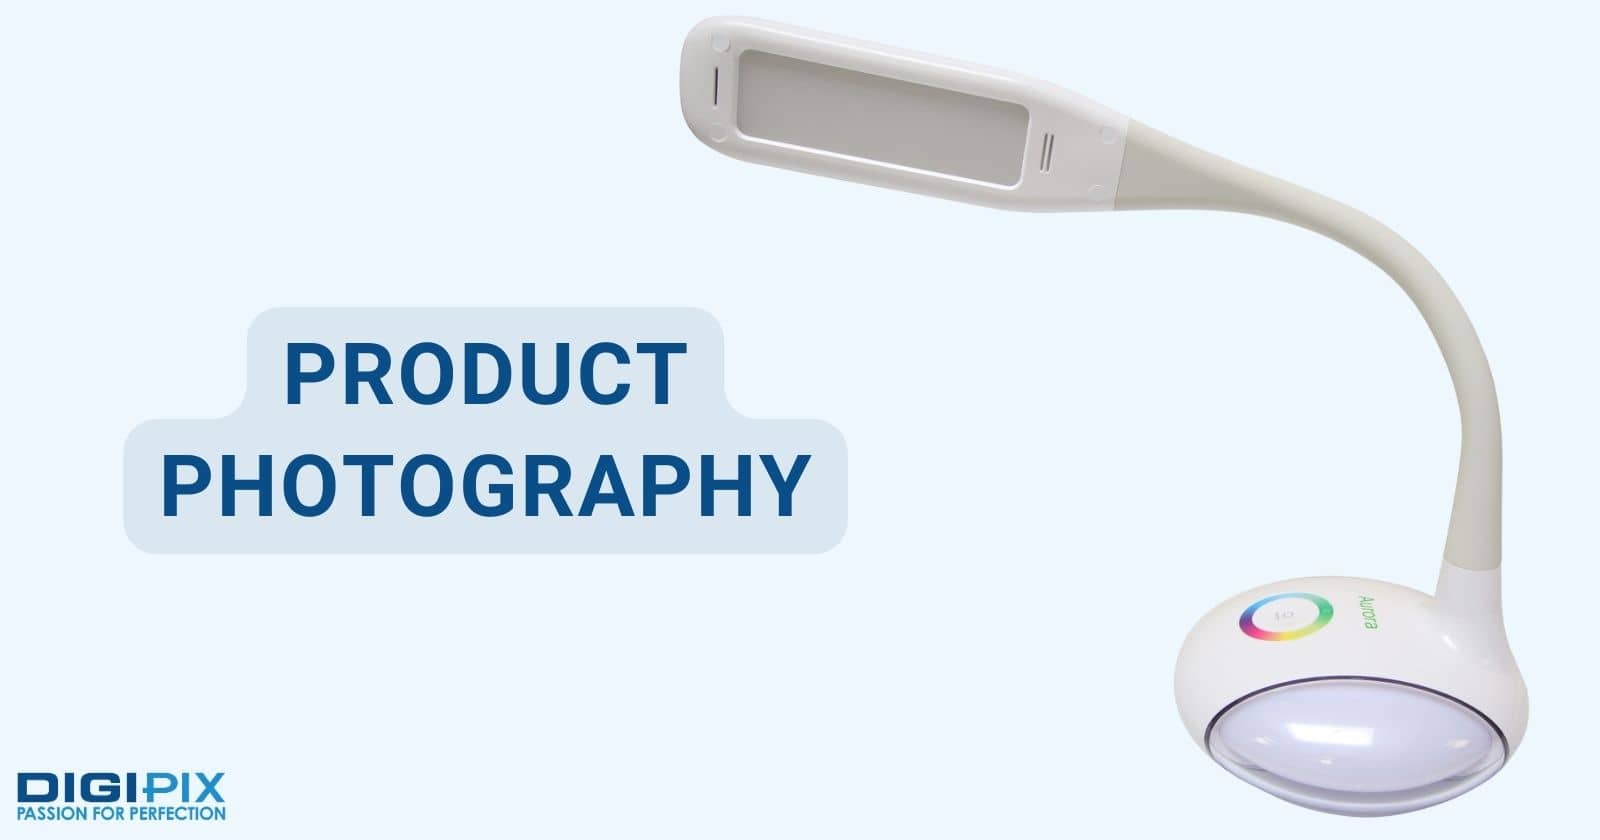 Product Photography digipix digipixinc.com